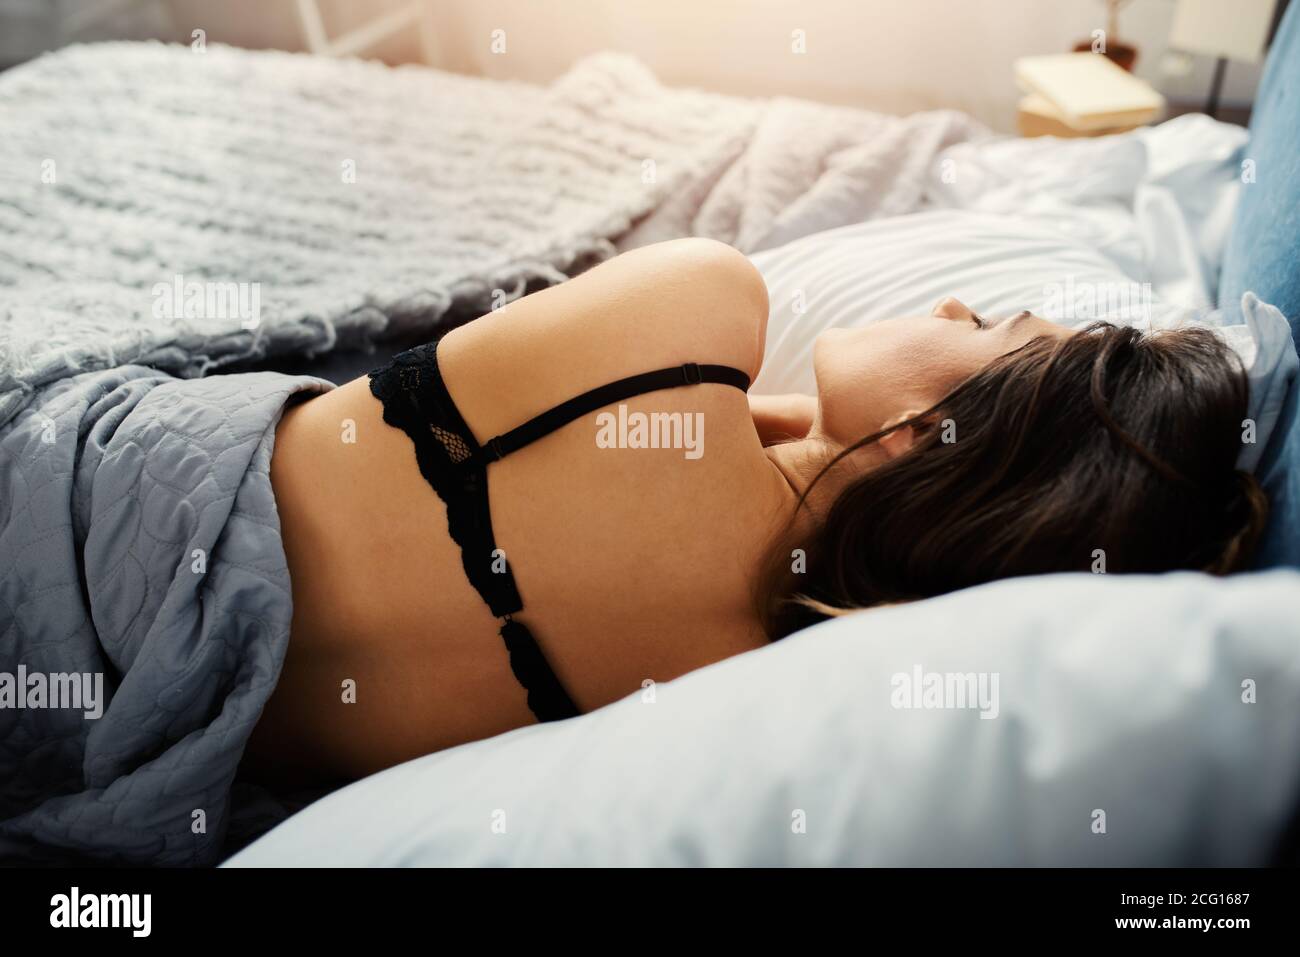 Mädchen schläft in einem gemütlichen Bett während der Nacht. Konzept der Entspannung und Erholung. Stockfoto